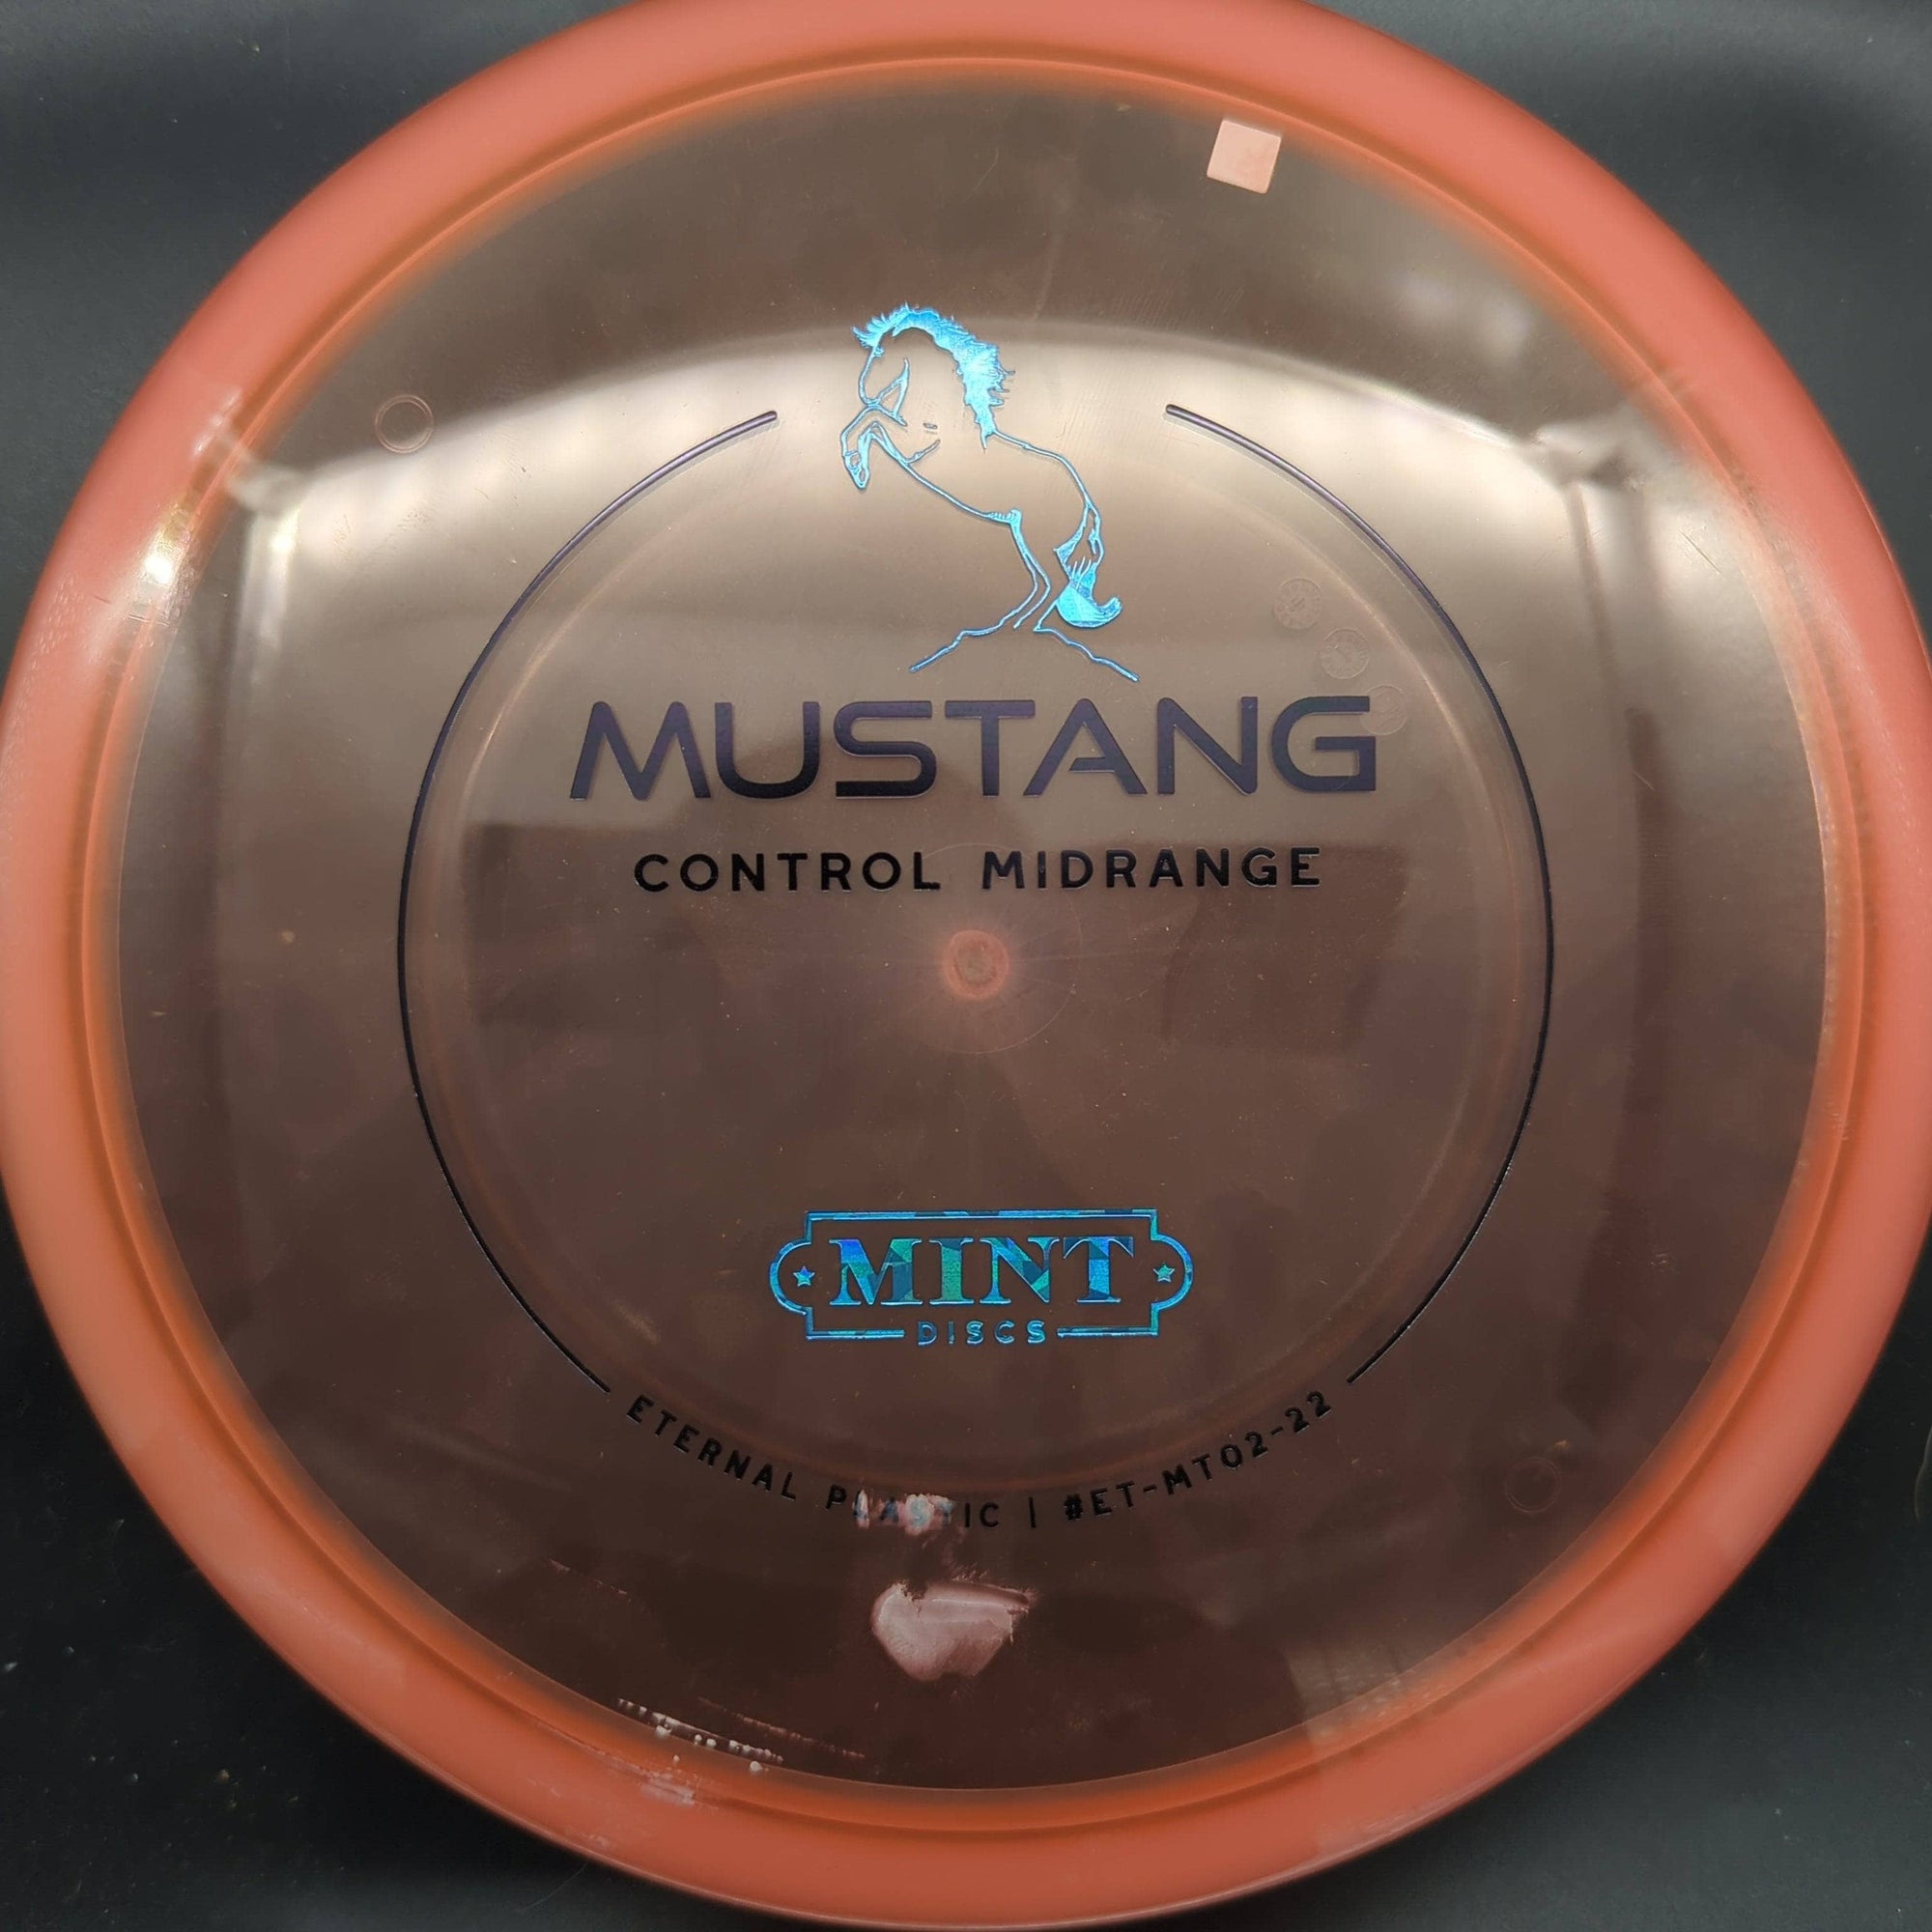 Mint Discs Mid Range Mustang - Eternal Plastic